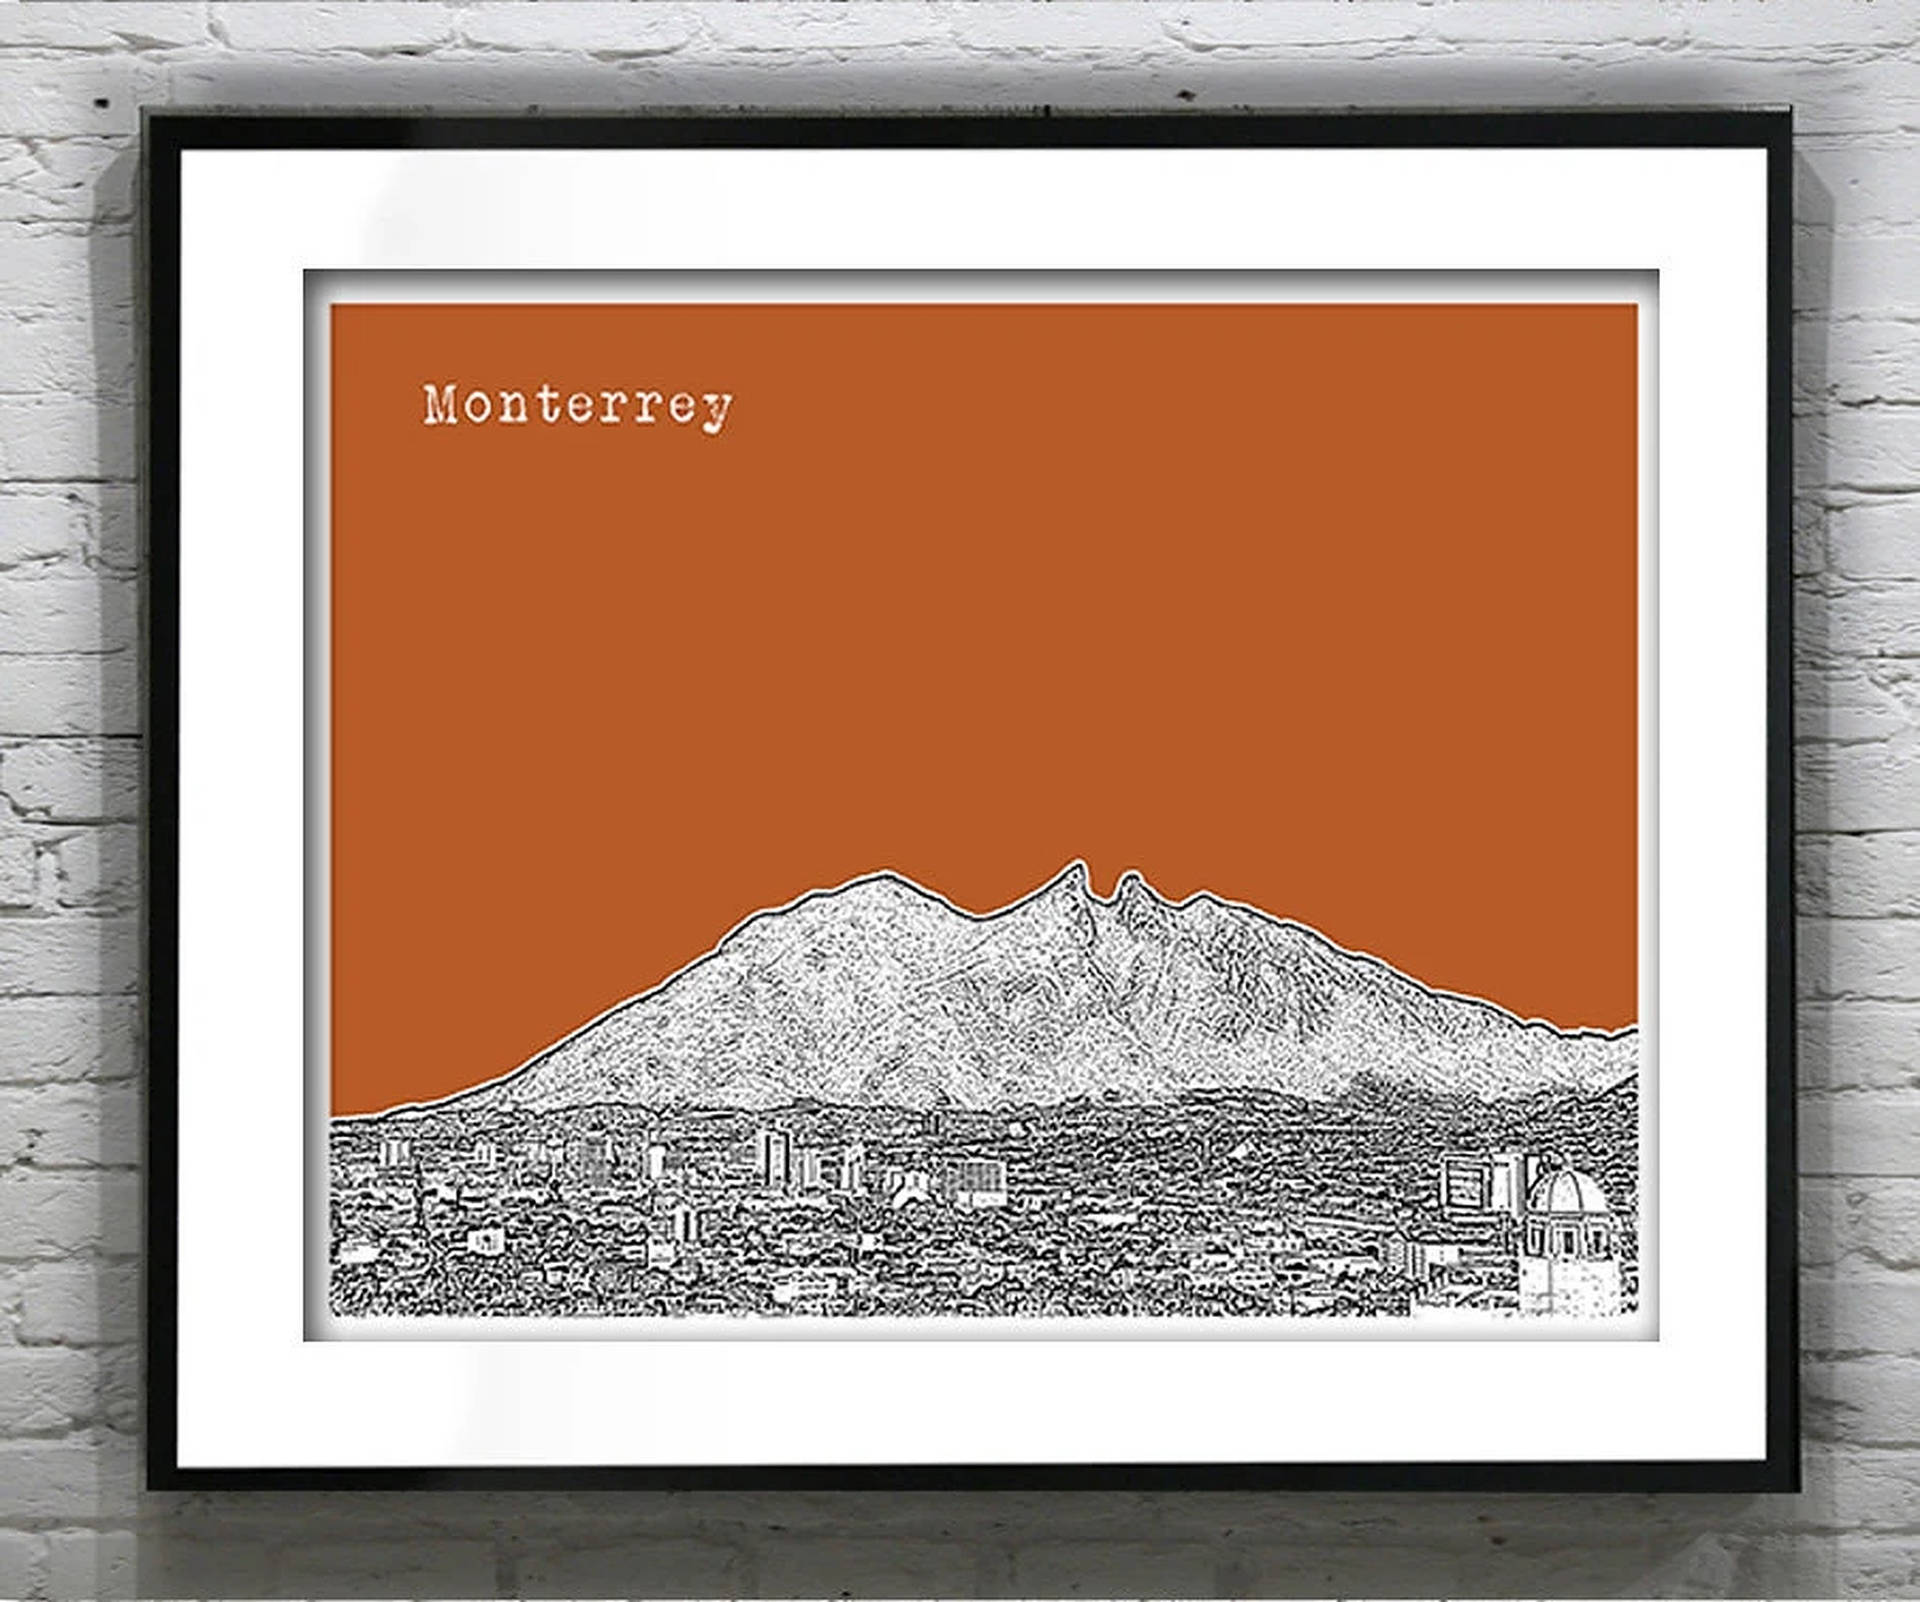 Braunerbilderrahmen Monterrey. Wallpaper